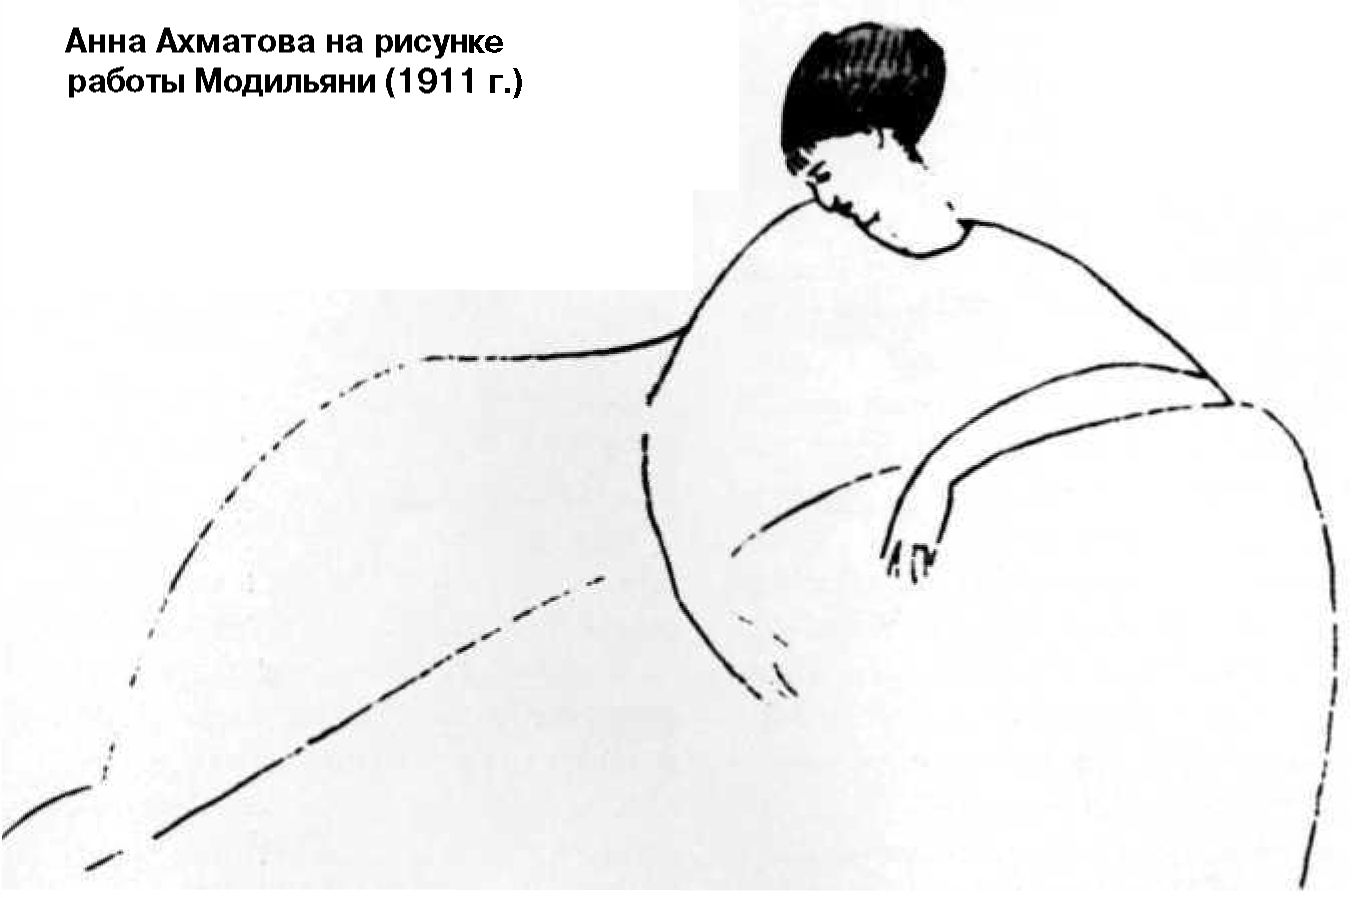 Анна Ахматова на рисунке работы Модильяни (1911 г.)